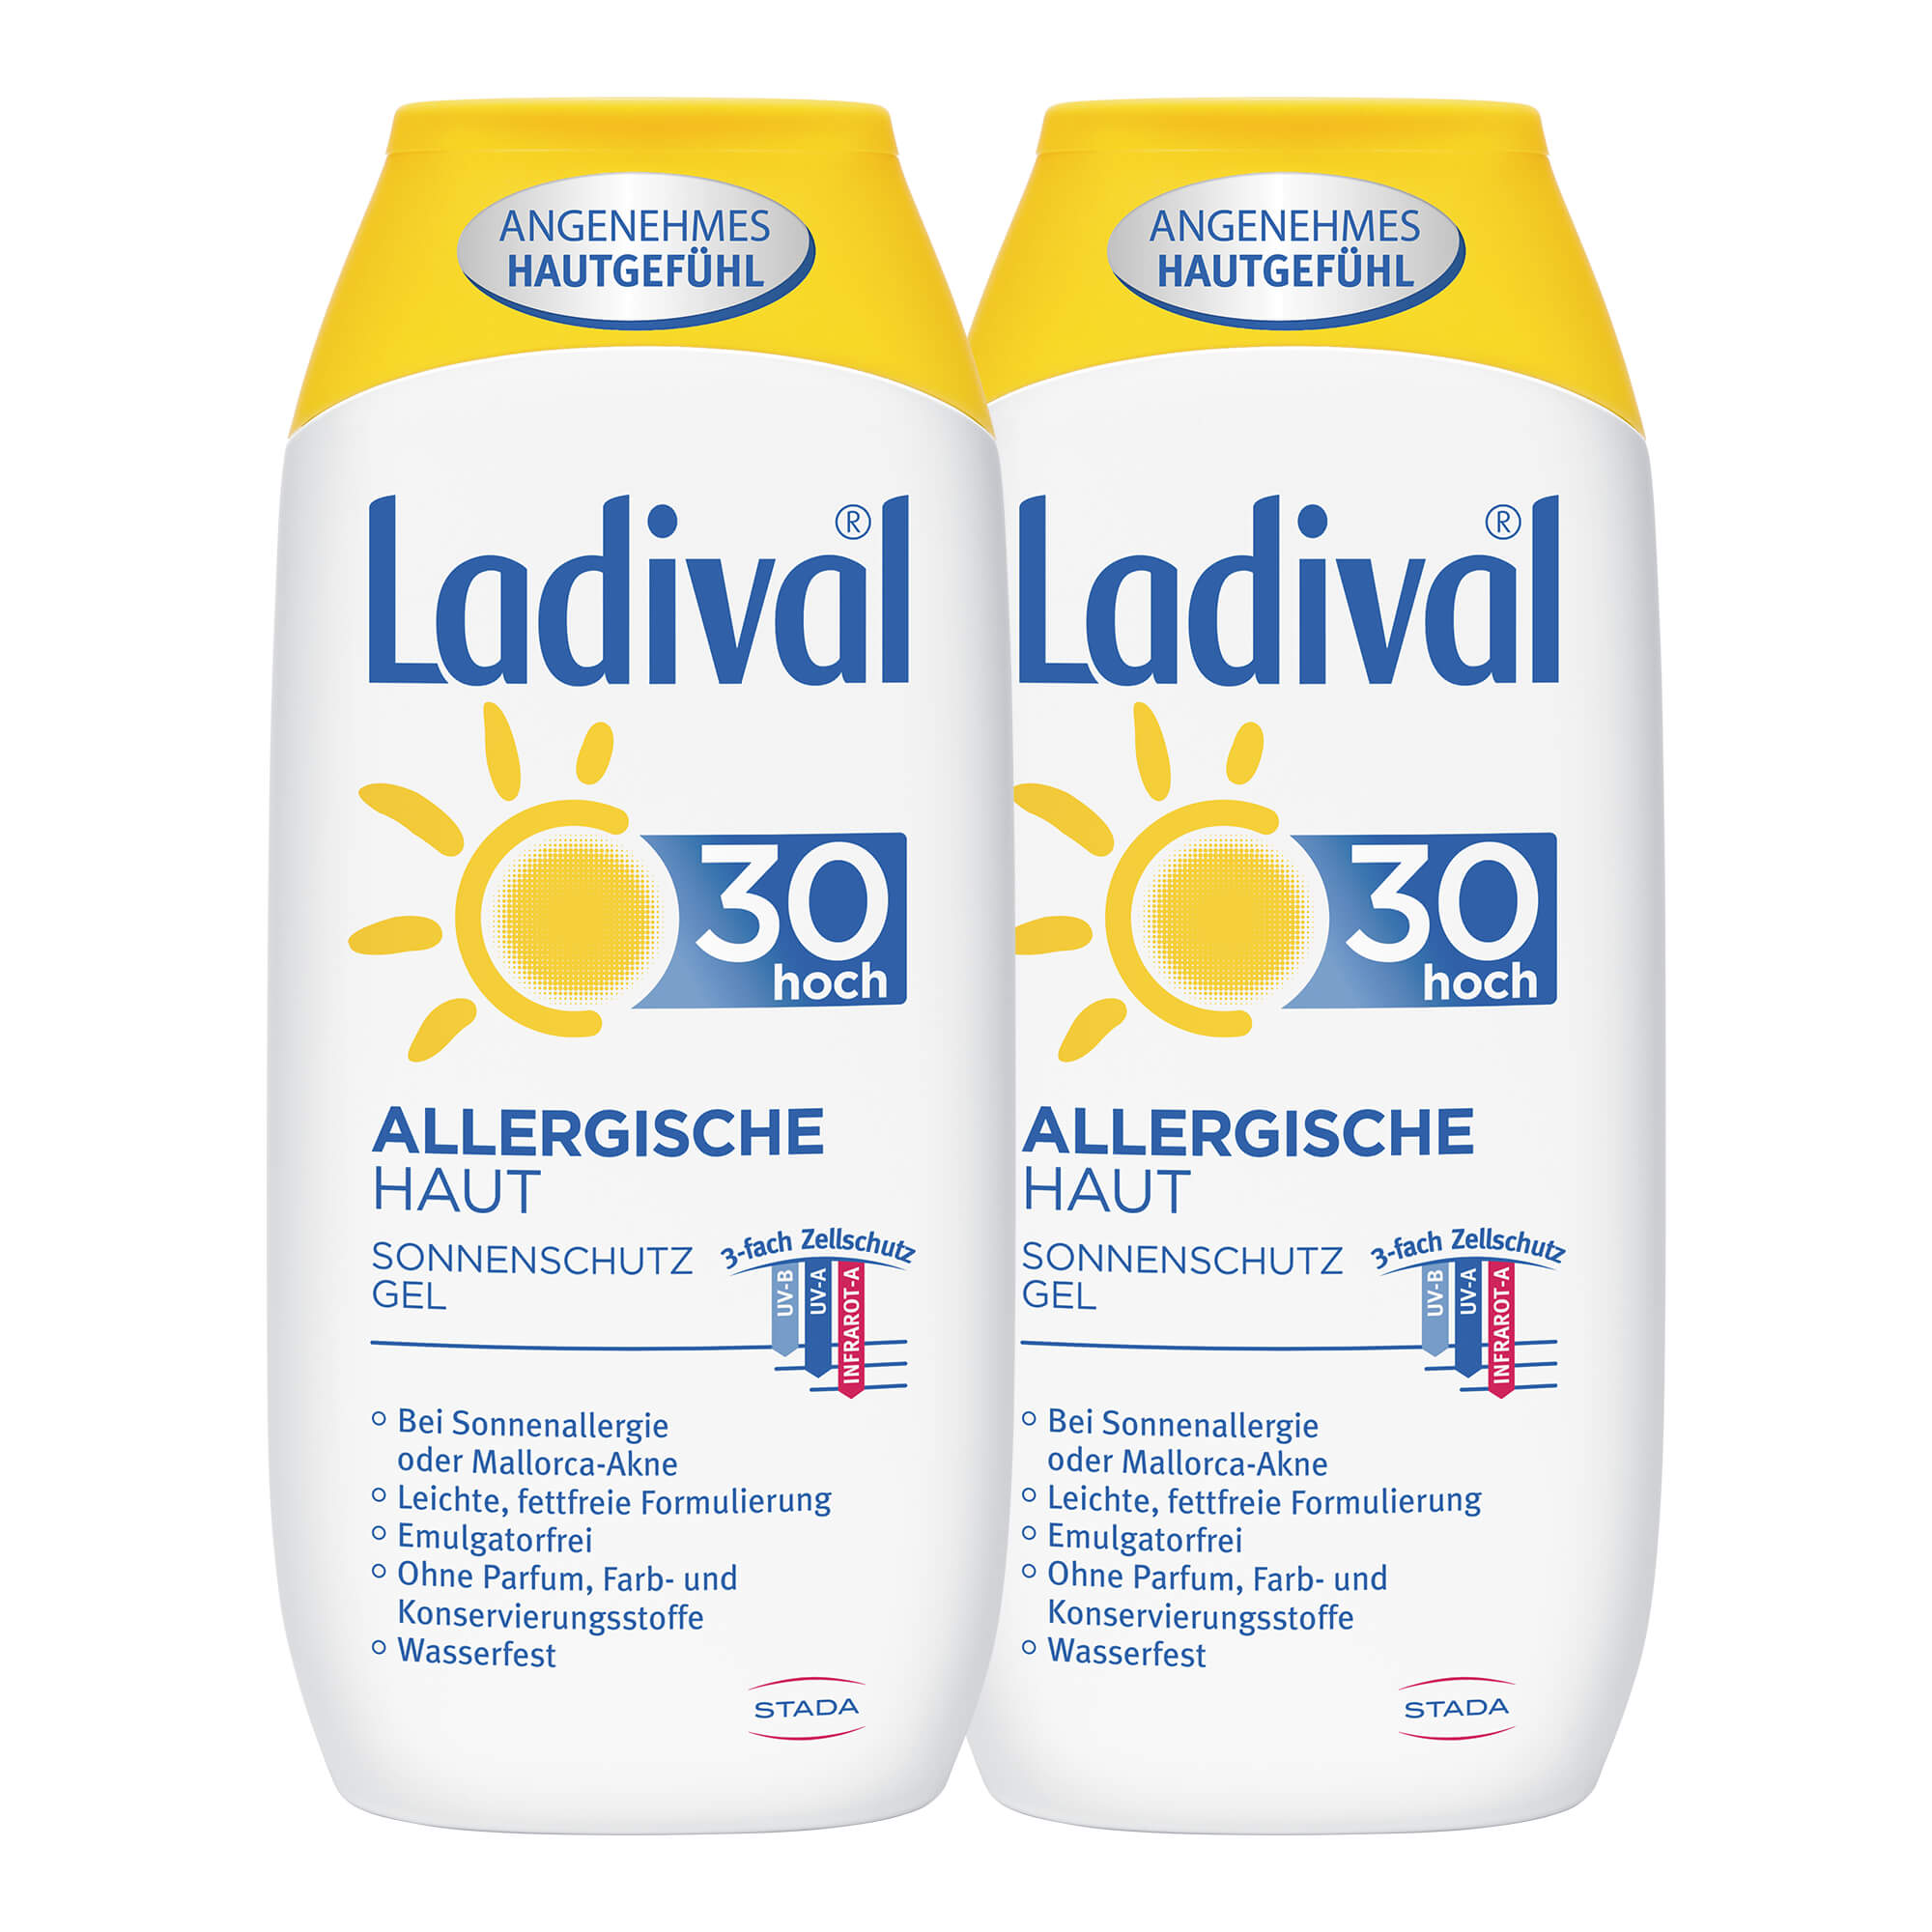 Sonnenschutz für zu Allergien neigende Haut. Mit LSF 30. Doppelpack.